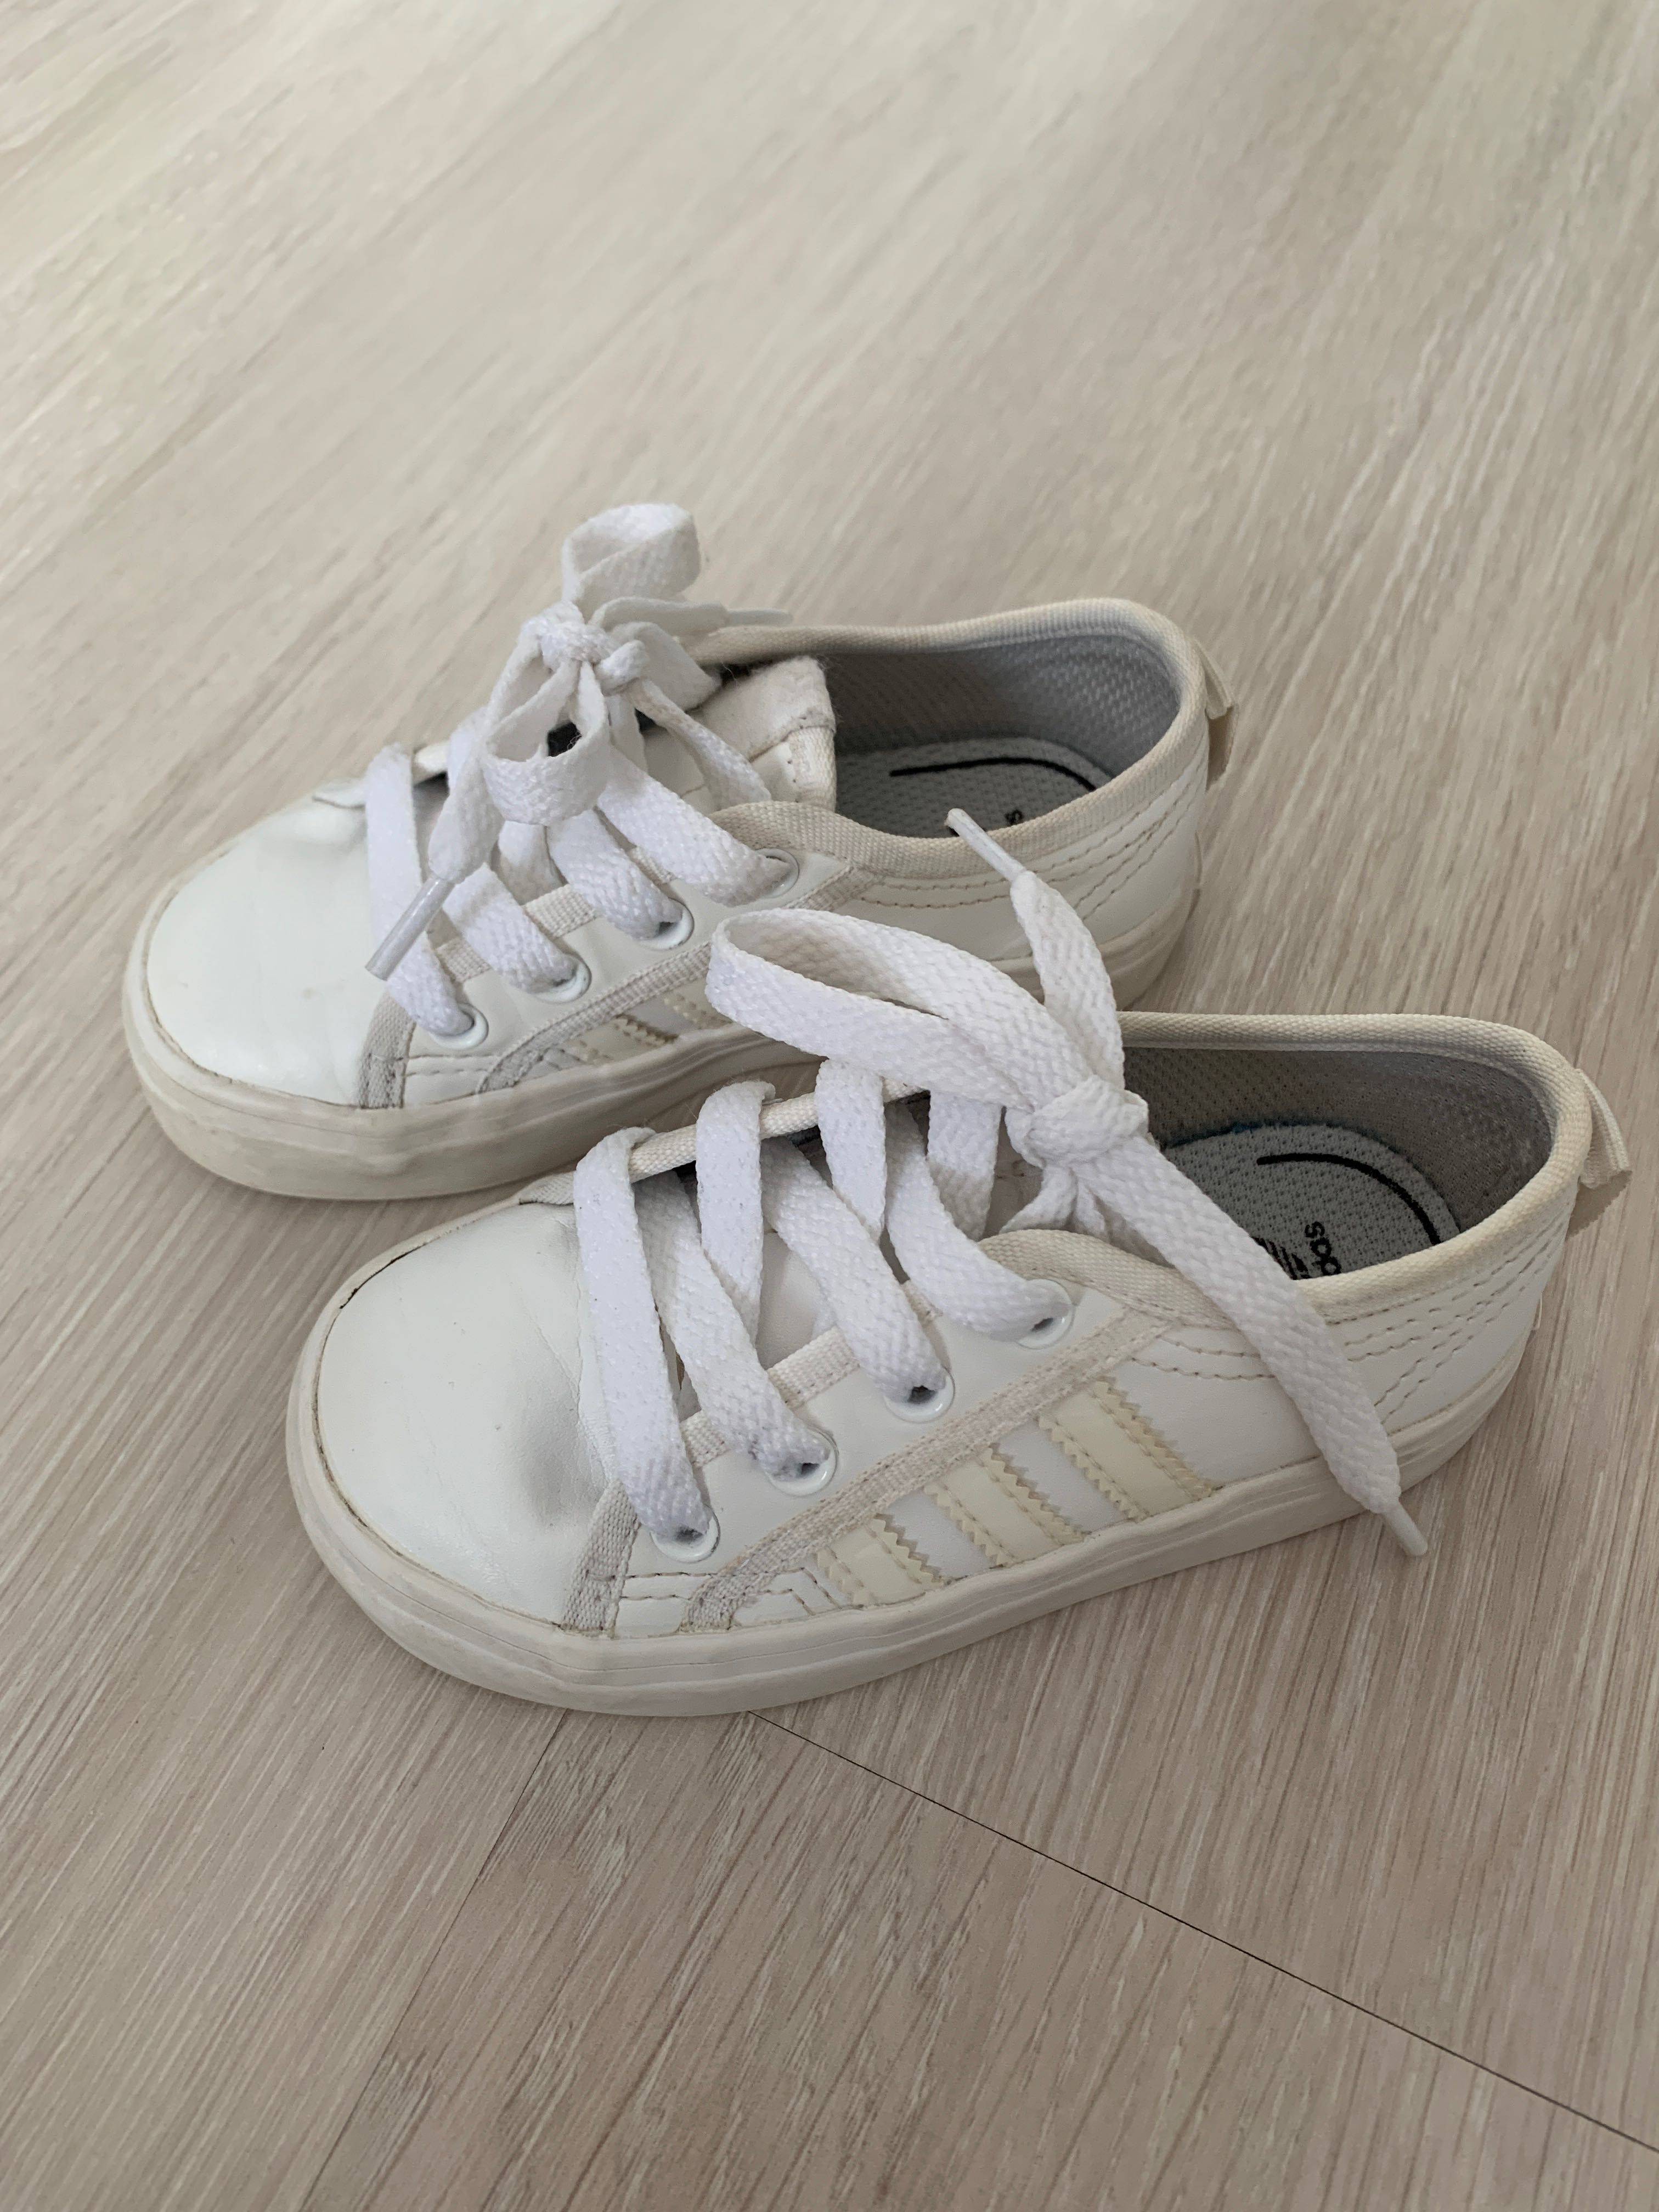 Adidasi ,sandale copii